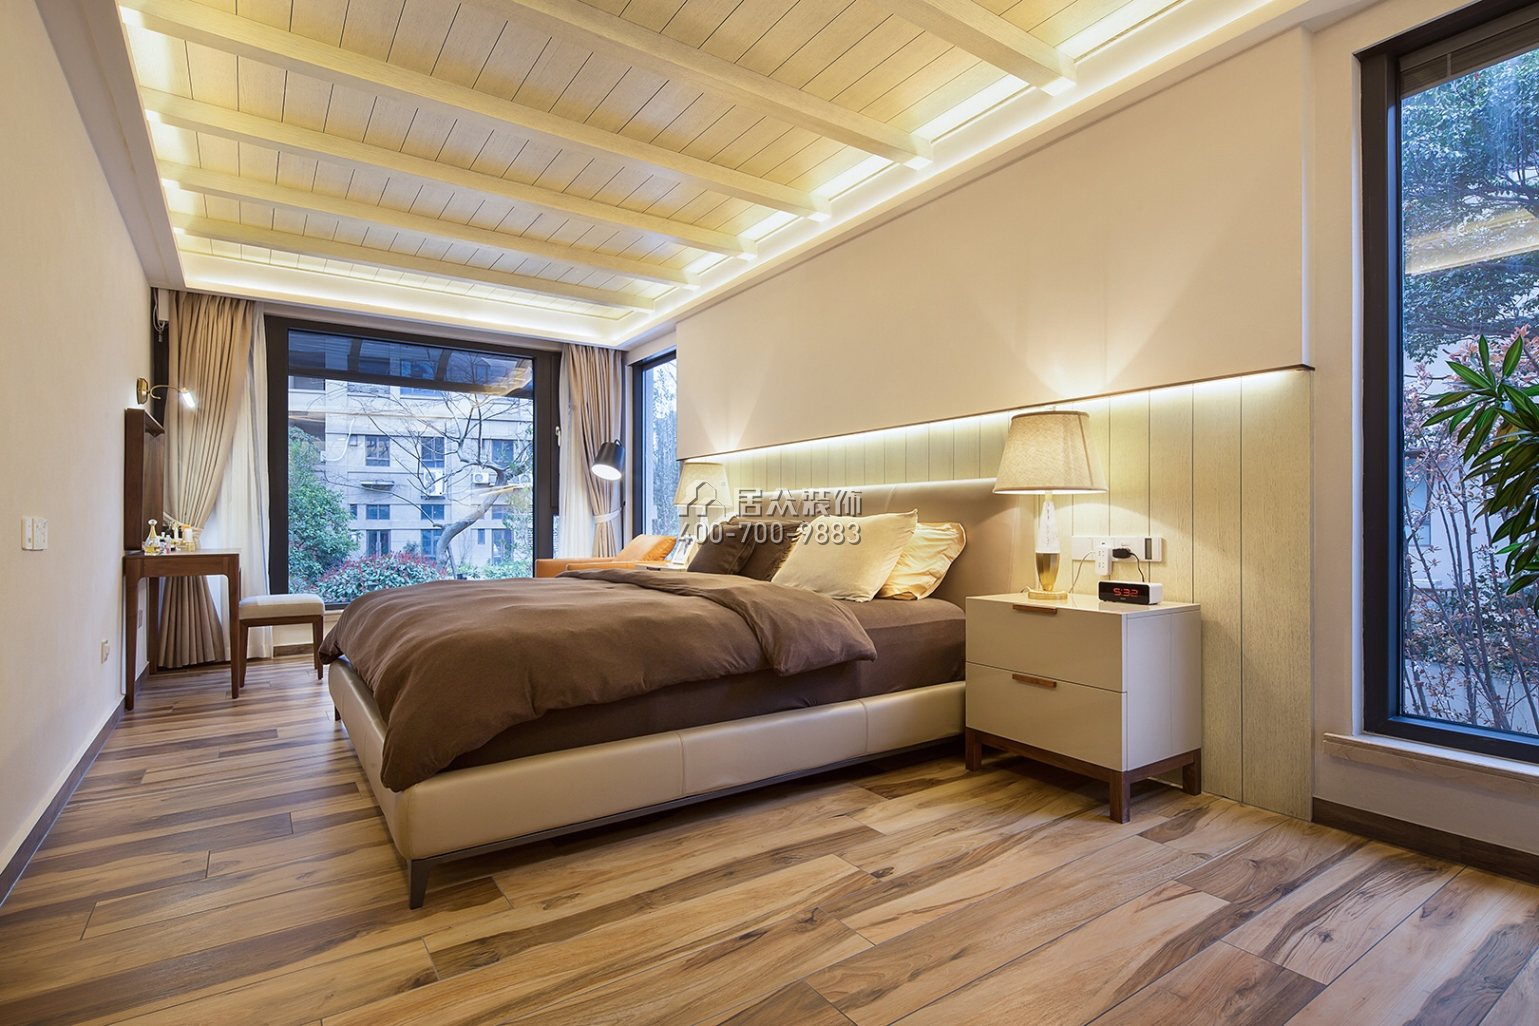 合能洋湖公館300平方米現代簡約風格復式戶型臥室裝修效果圖